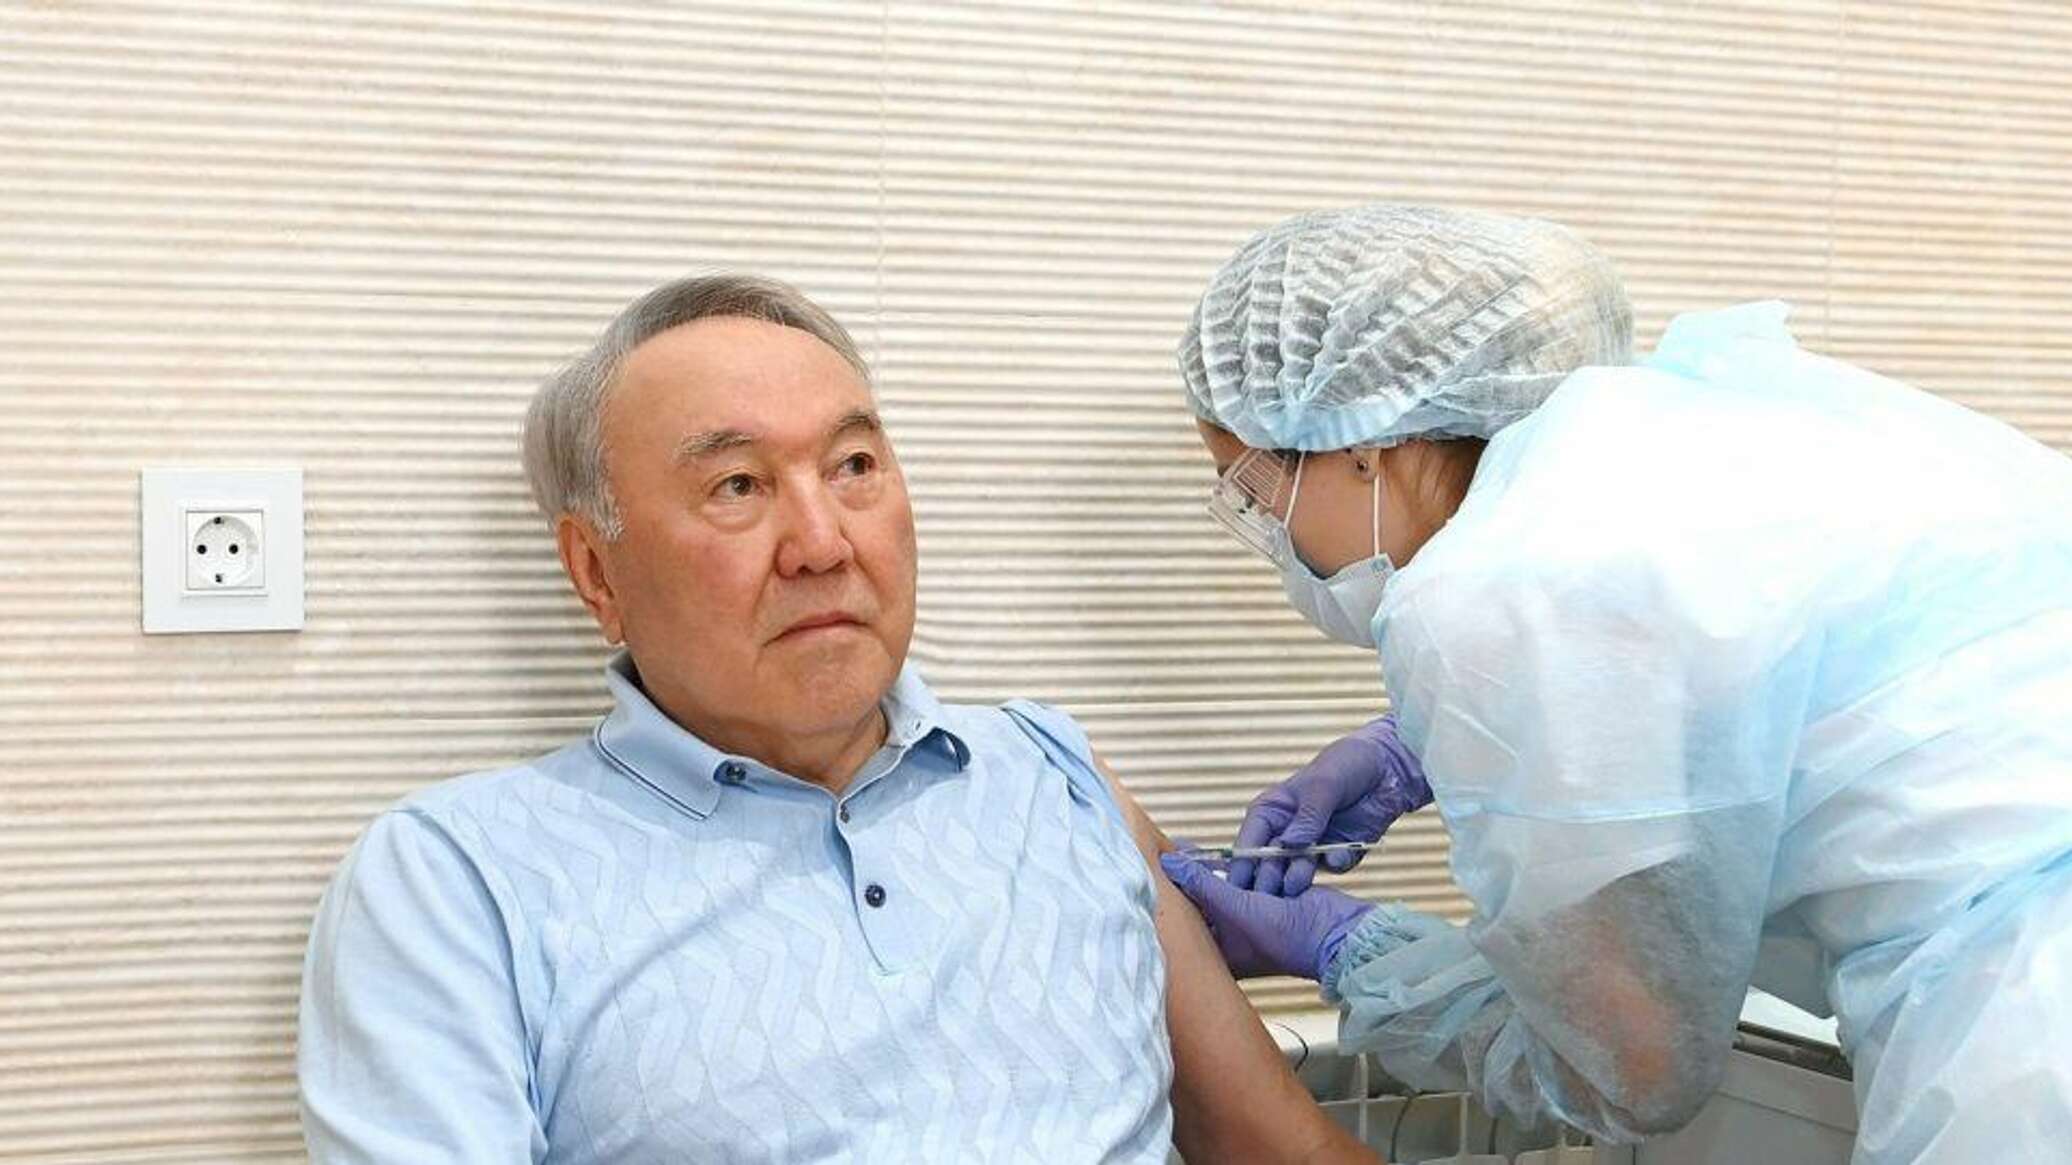 Назарбаев перенёс операцию на сердце